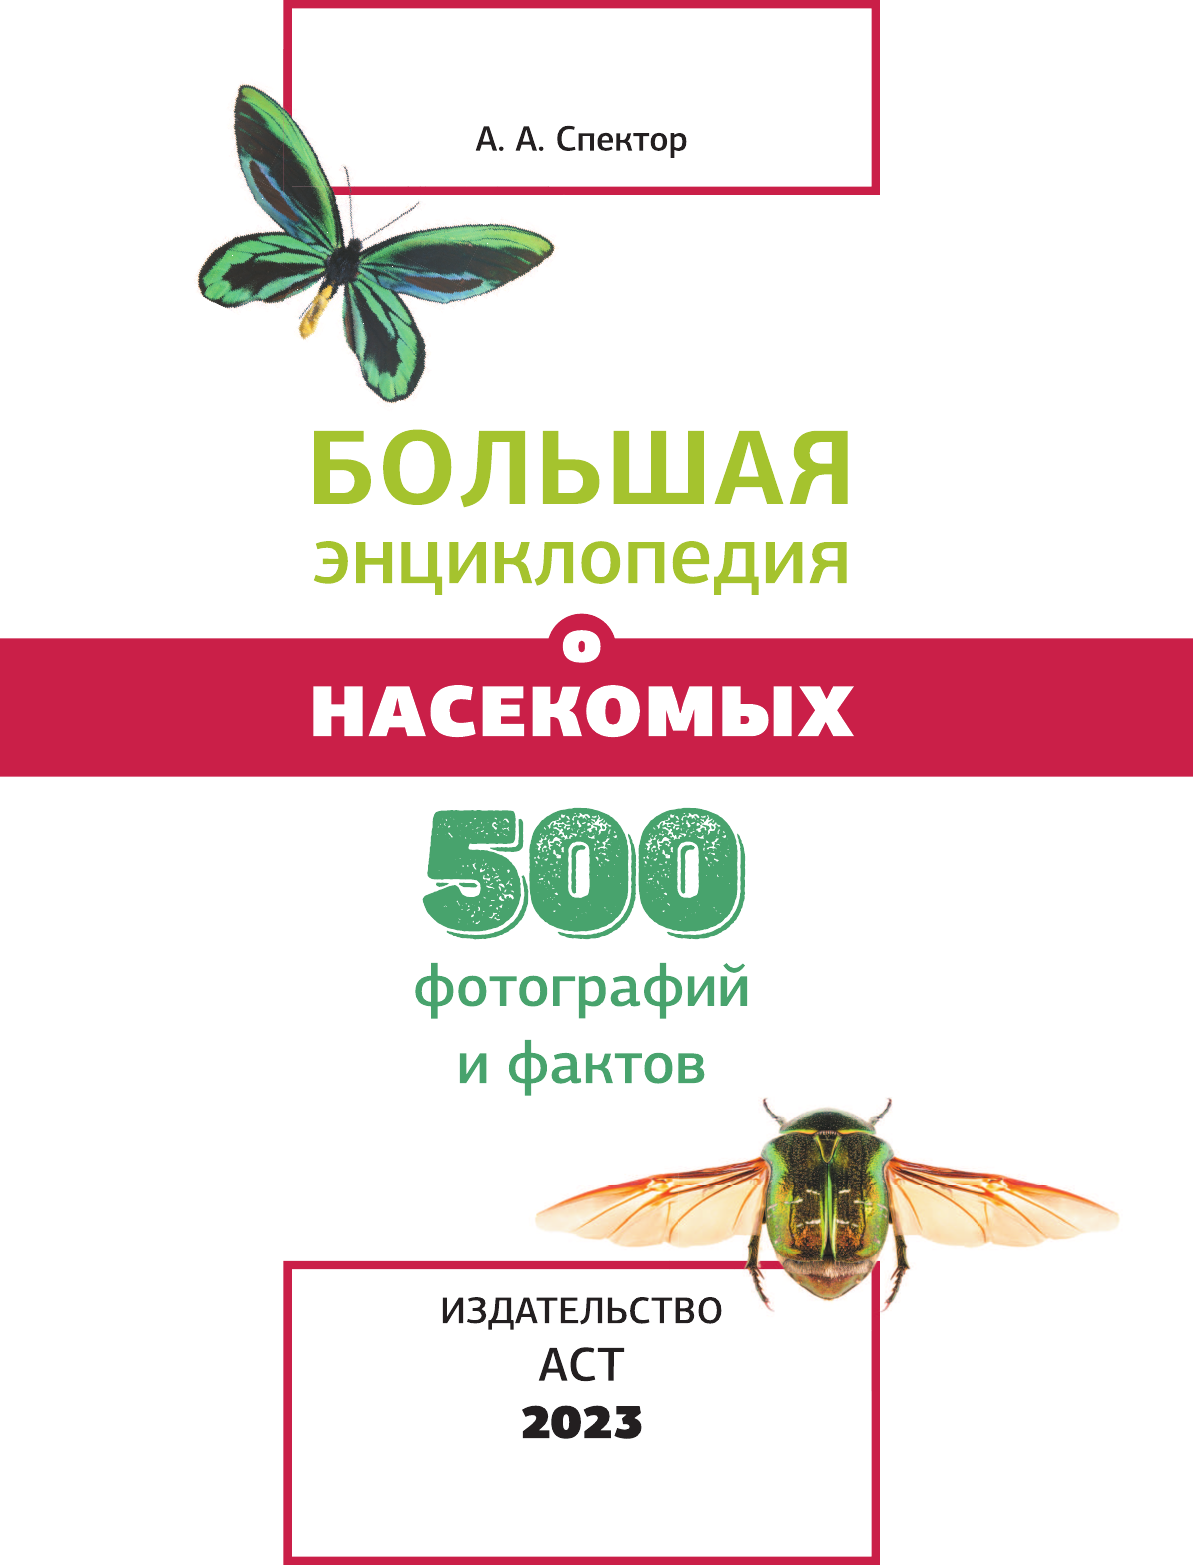  Большая энциклопедия о насекомых. 500 фотографий и фактов - страница 2